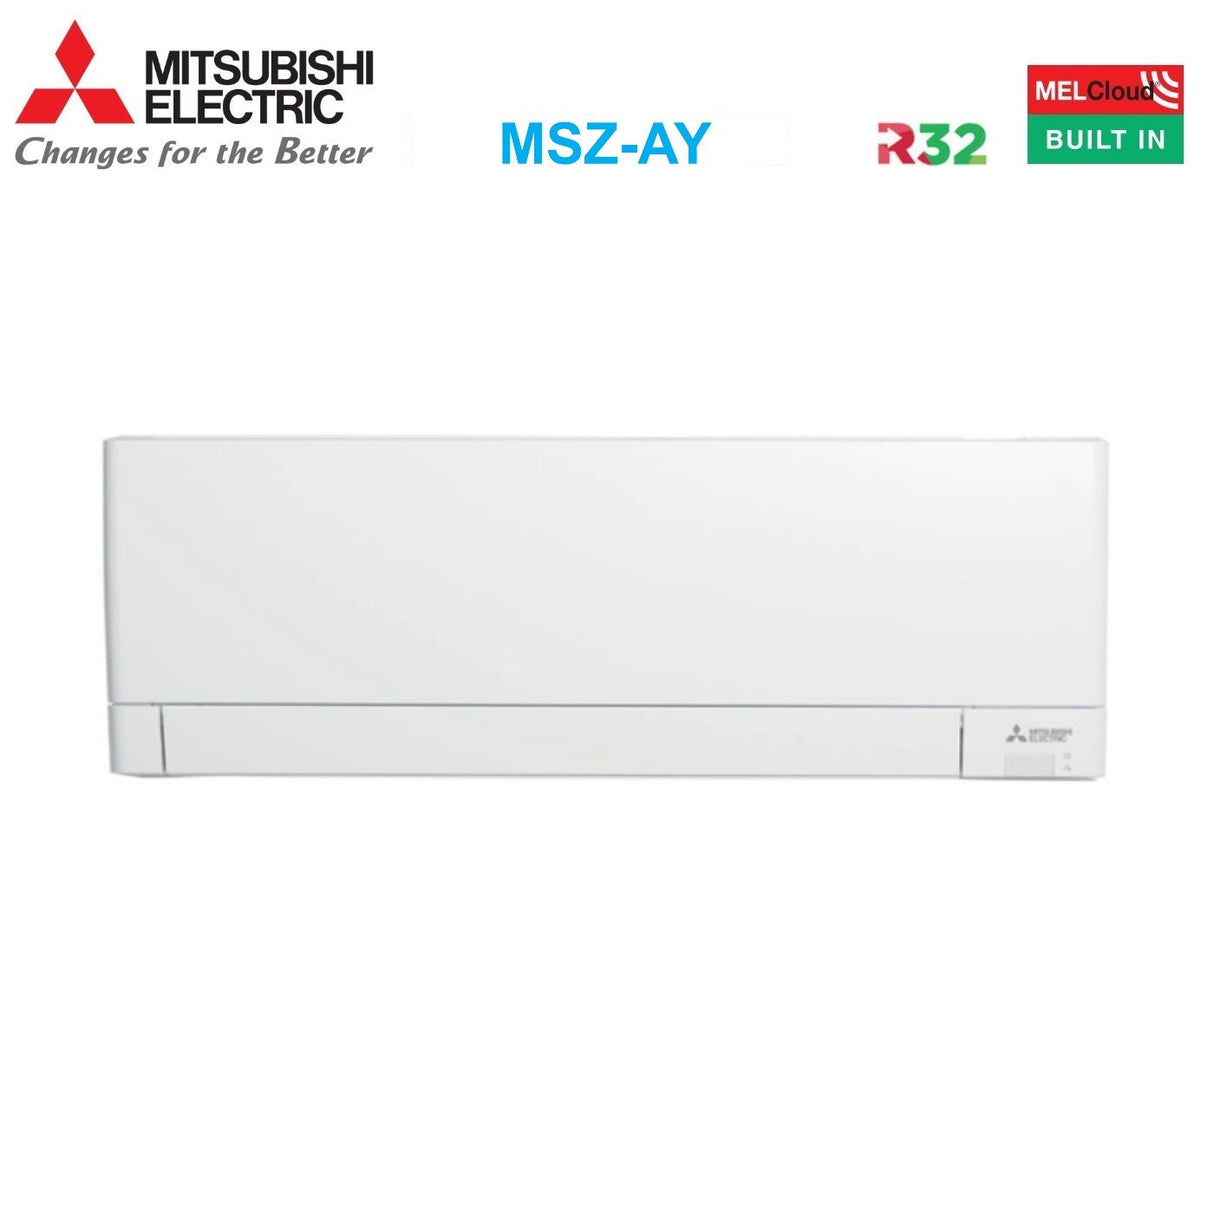 immagine-2-mitsubishi-electric-area-occasioni-climatizzatore-condizionatore-mitsubishi-electric-dual-split-inverter-linea-plus-serie-msz-ay-912-con-mxz-2f42vf-r-32-wi-fi-integrato-900012000